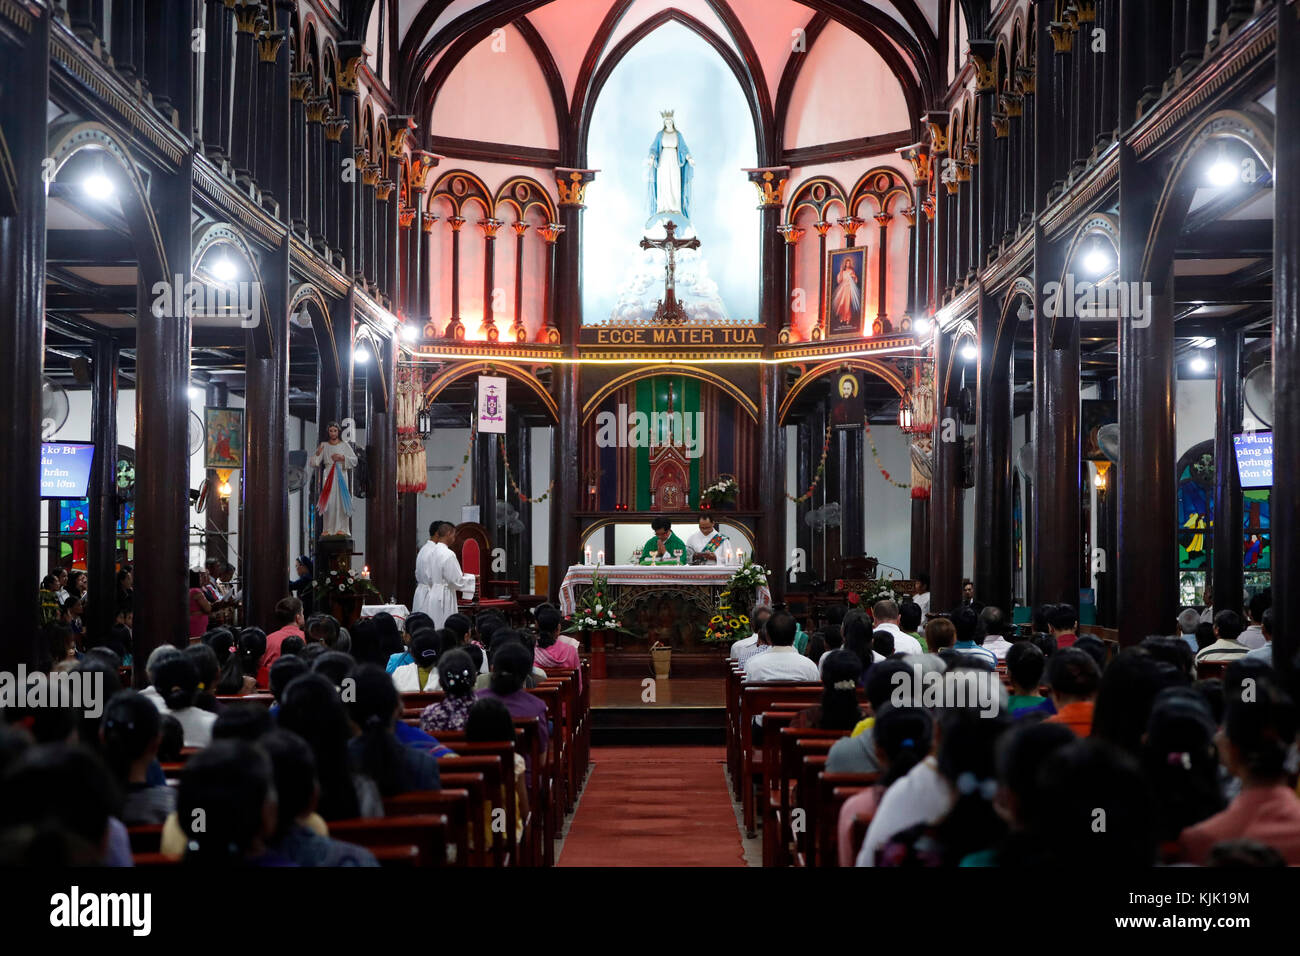 Kon Tum Cathédrale, également connu sous le nom de église en bois. Messe catholique. Kon Tum. Le Vietnam. Banque D'Images